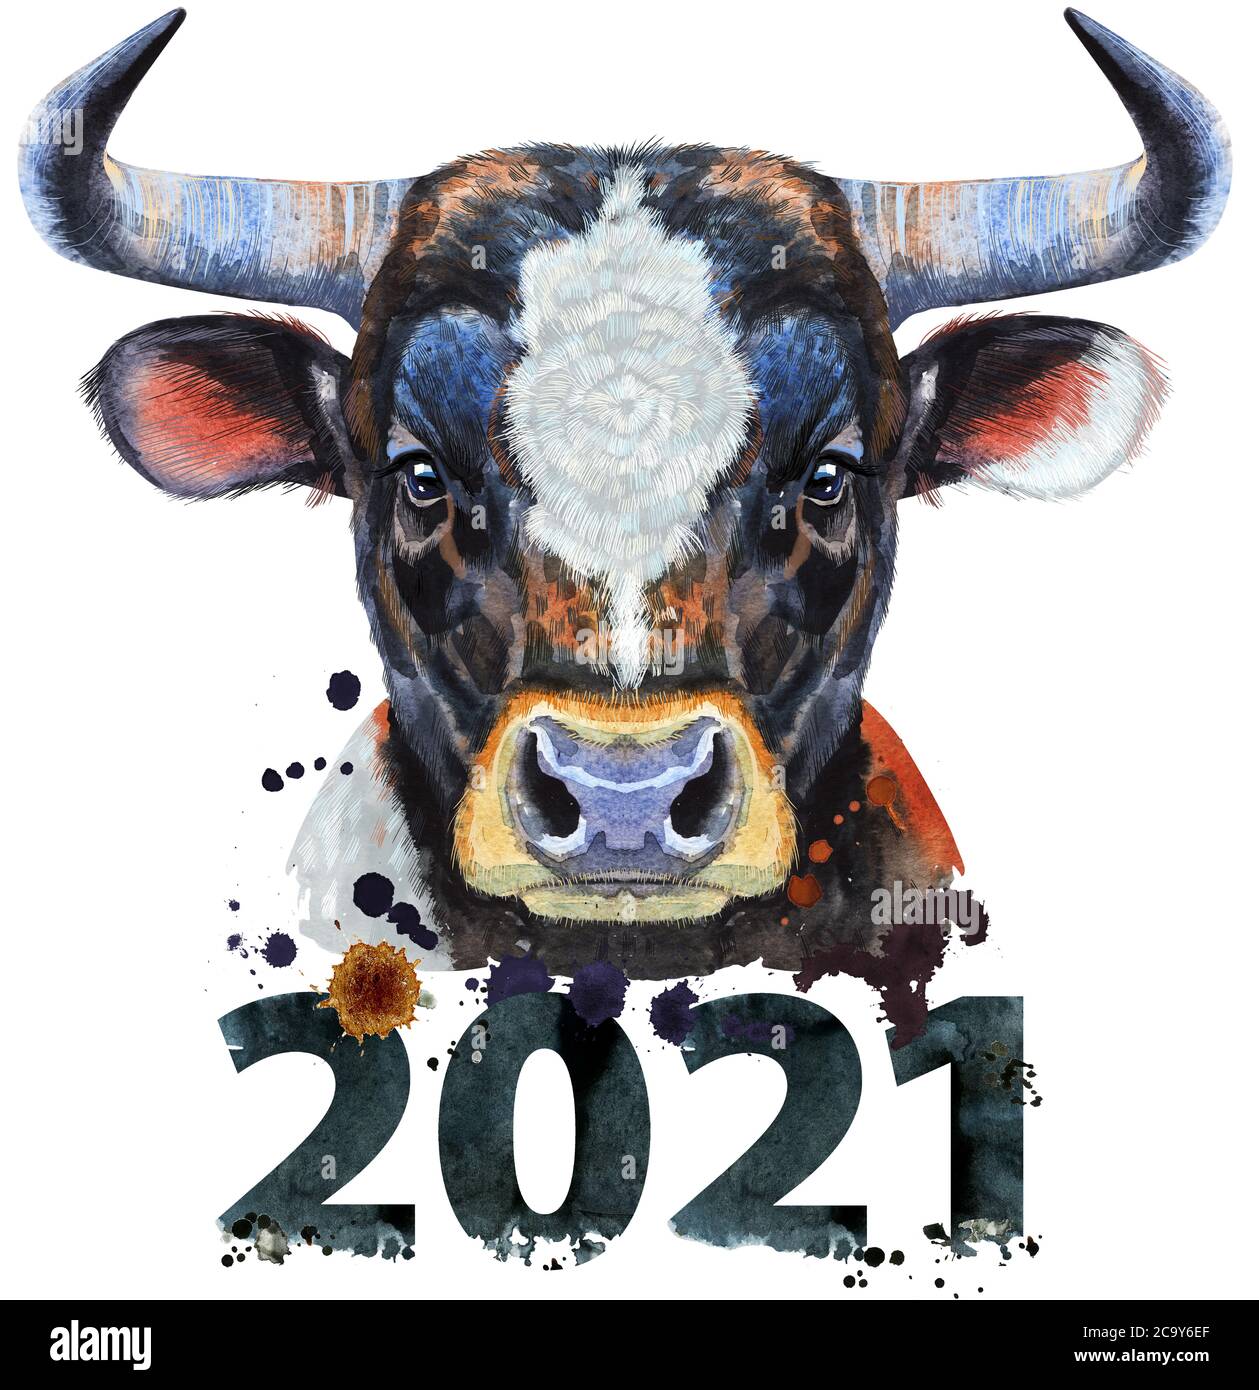 Schwarzer mächtiger Bulle mit Wasserfarben-Grafiken der Zahl 2021. Bull Tier Illustration mit Spritzwasser-Farbe texturierten Hintergrund. Stockfoto